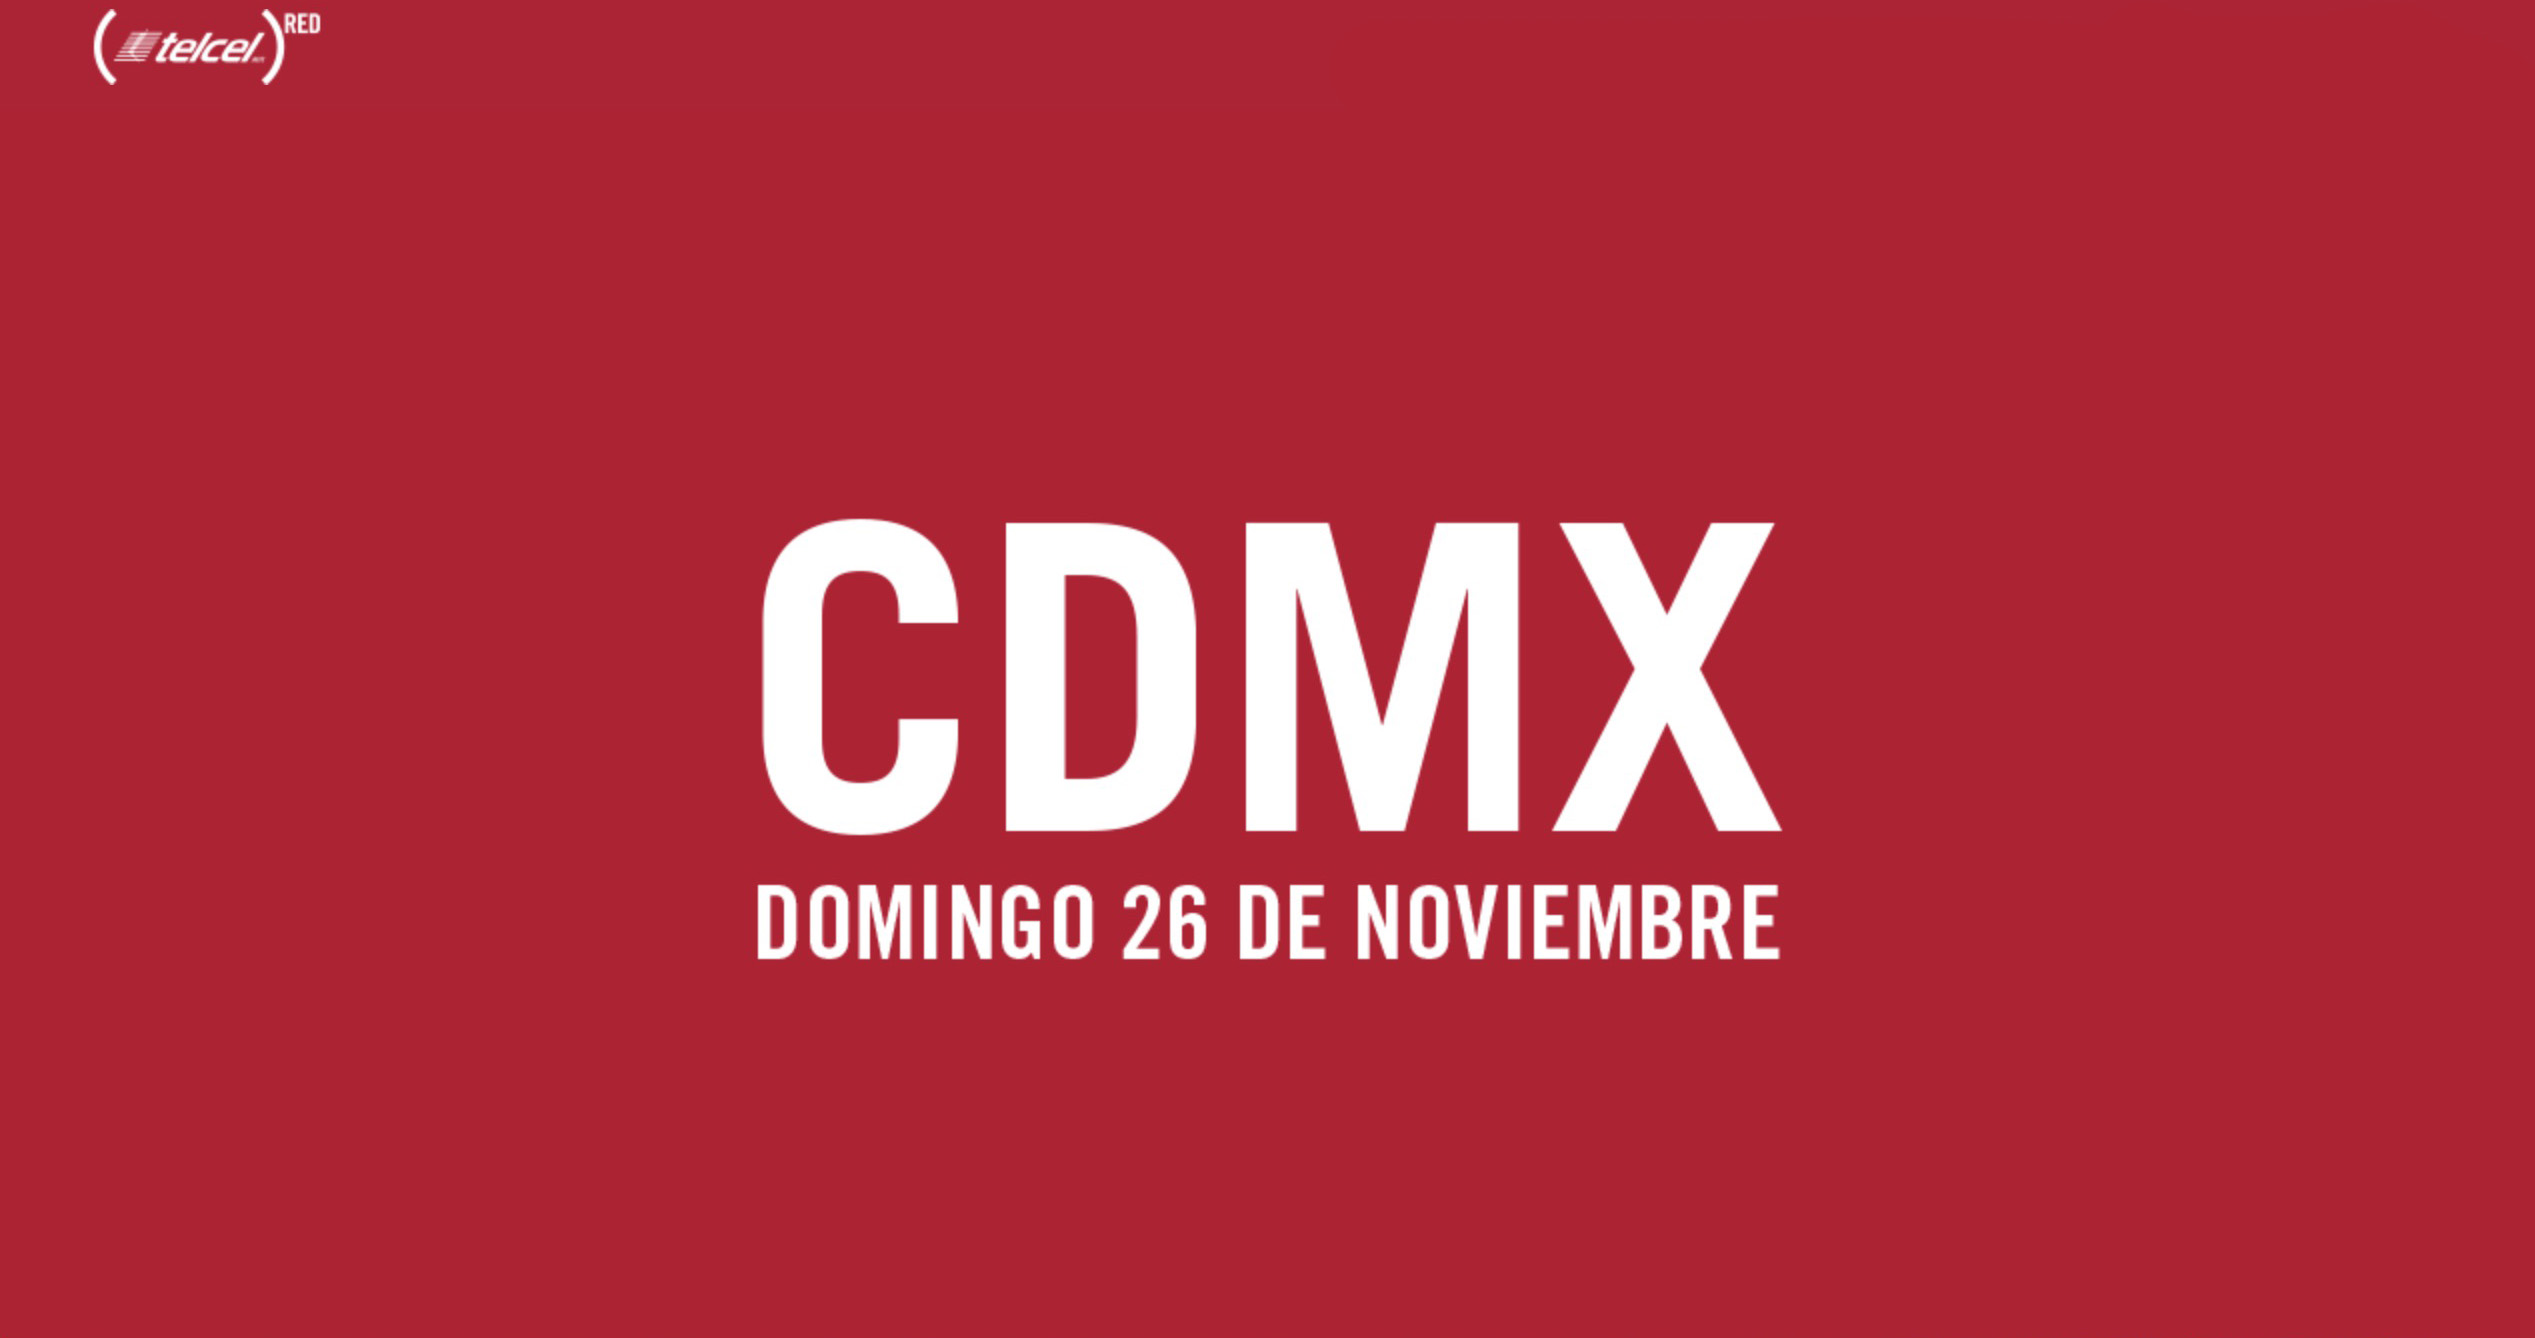 Carrera TELCEL RED 2017 CDMX, 26 de noviembre, 5k y 10k